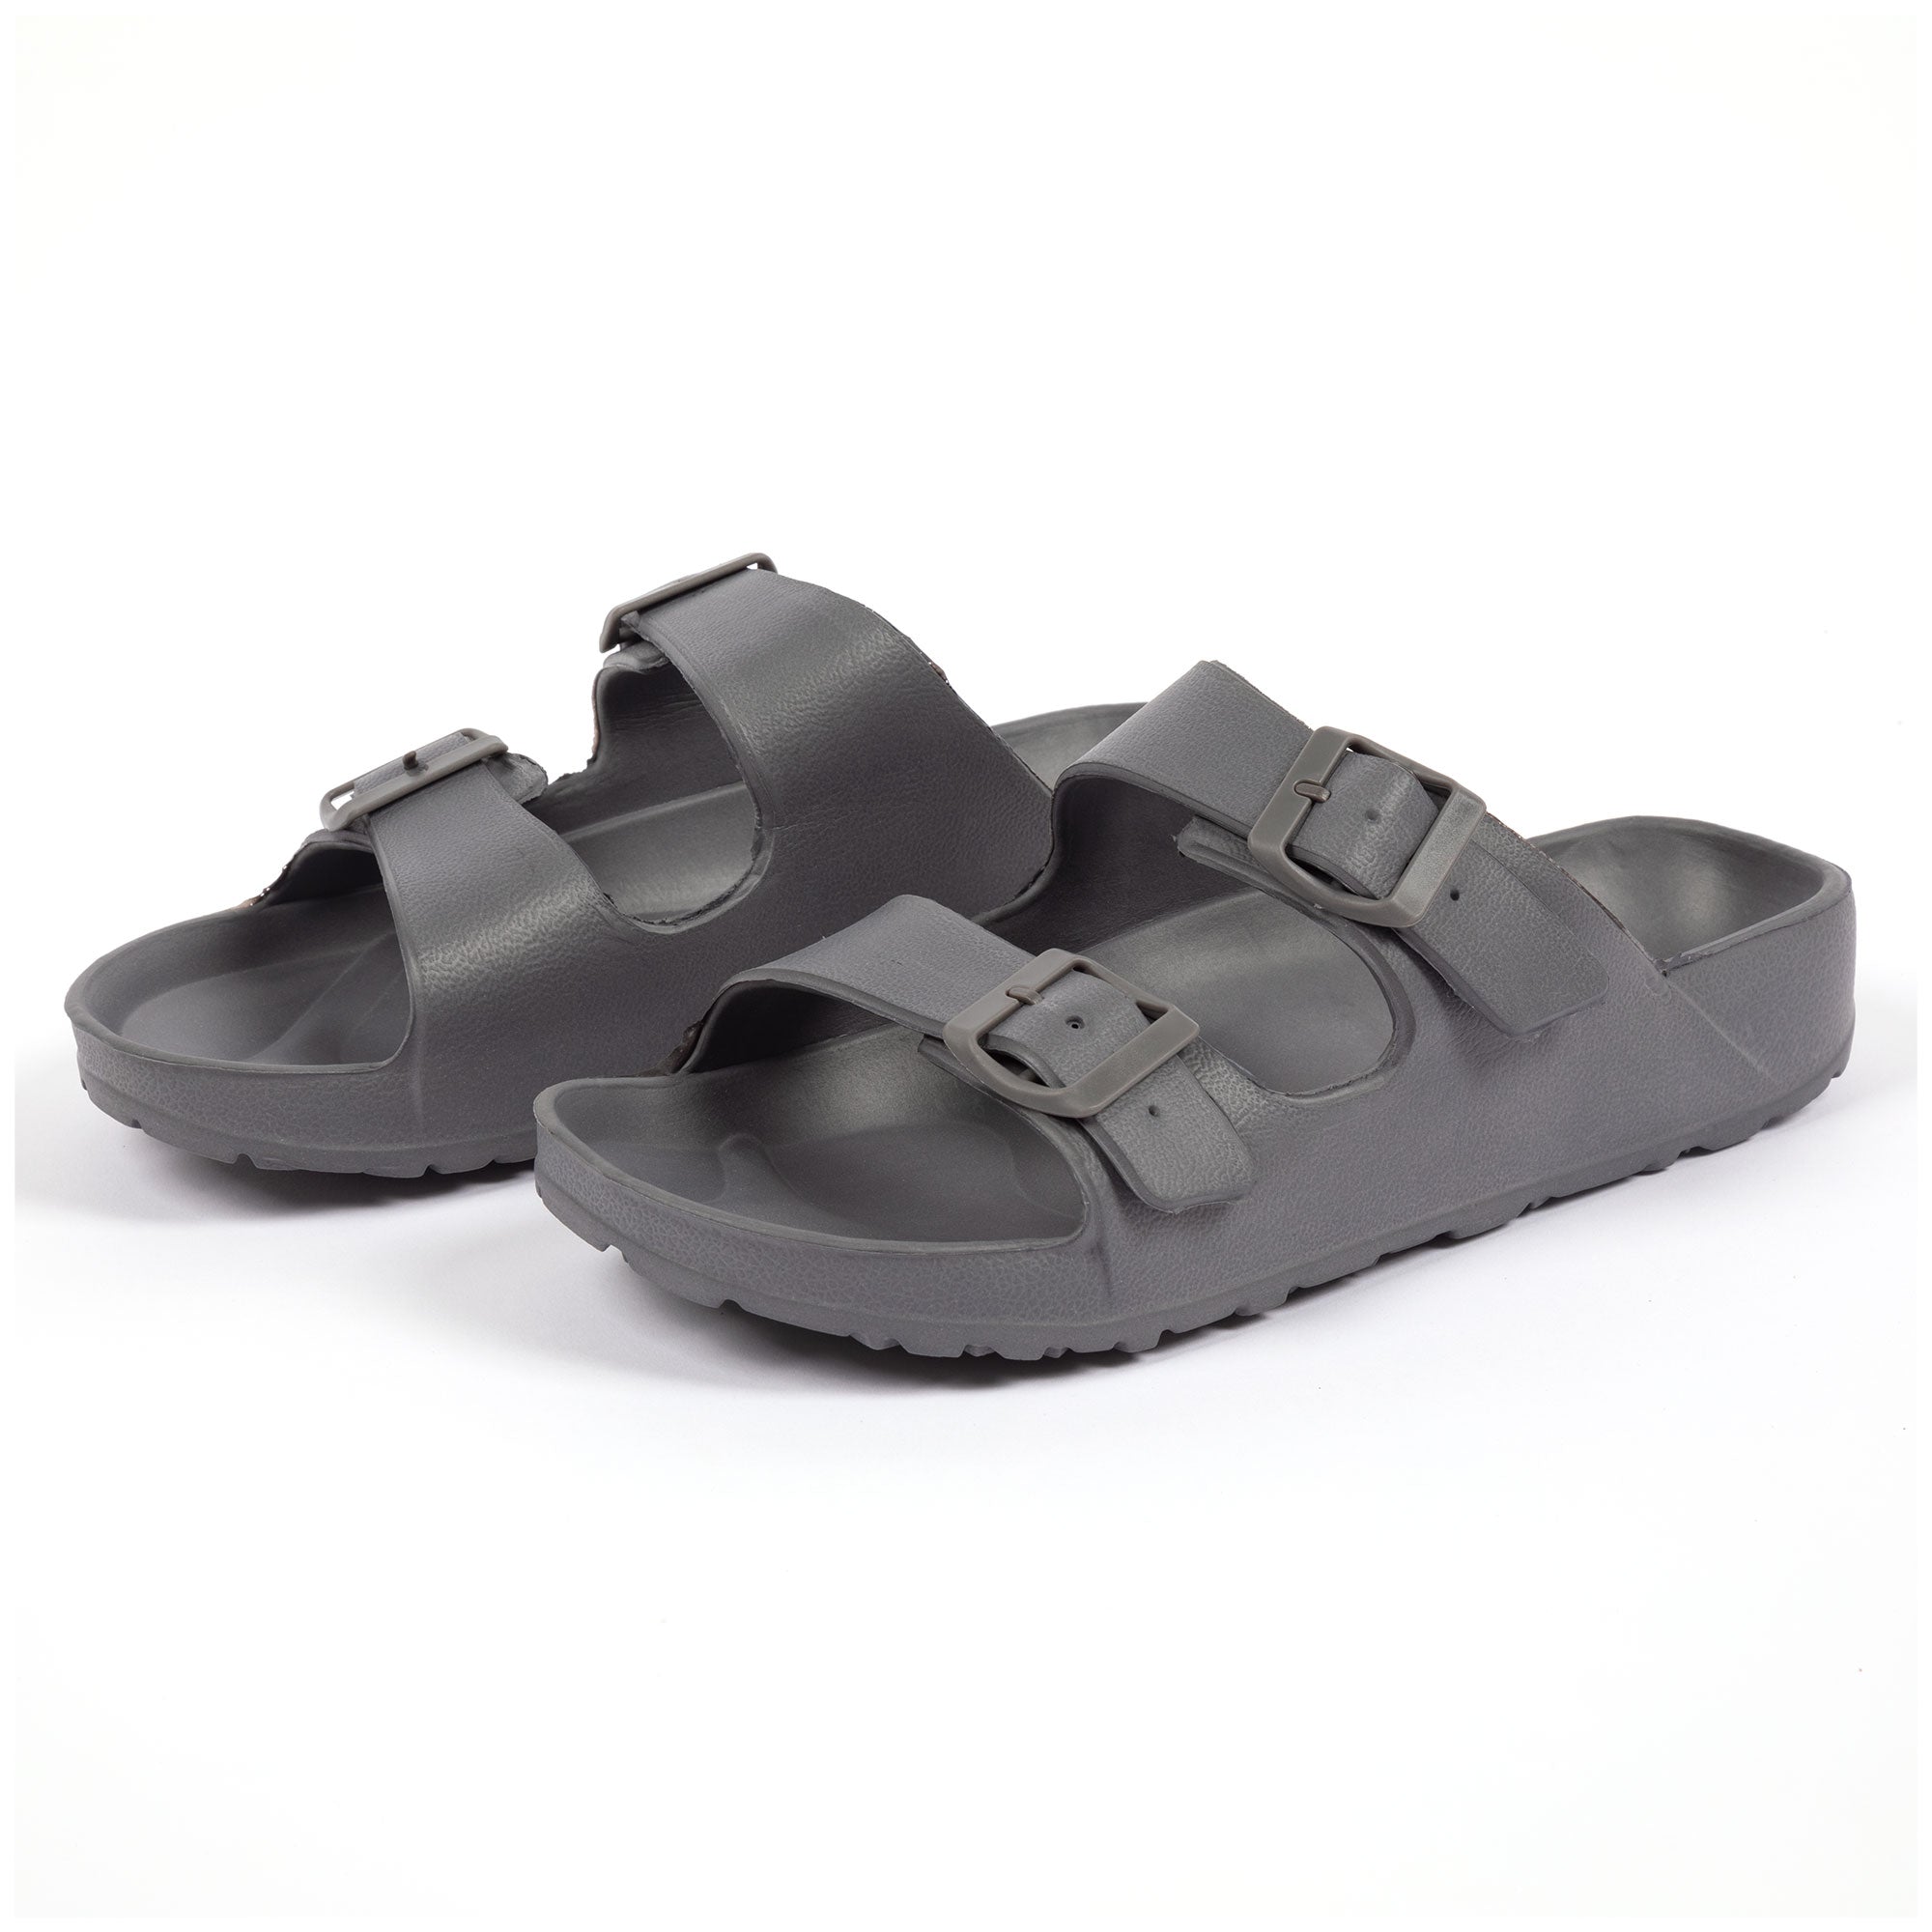 Men's Double Buckle Slide Sandals - Gray - 8